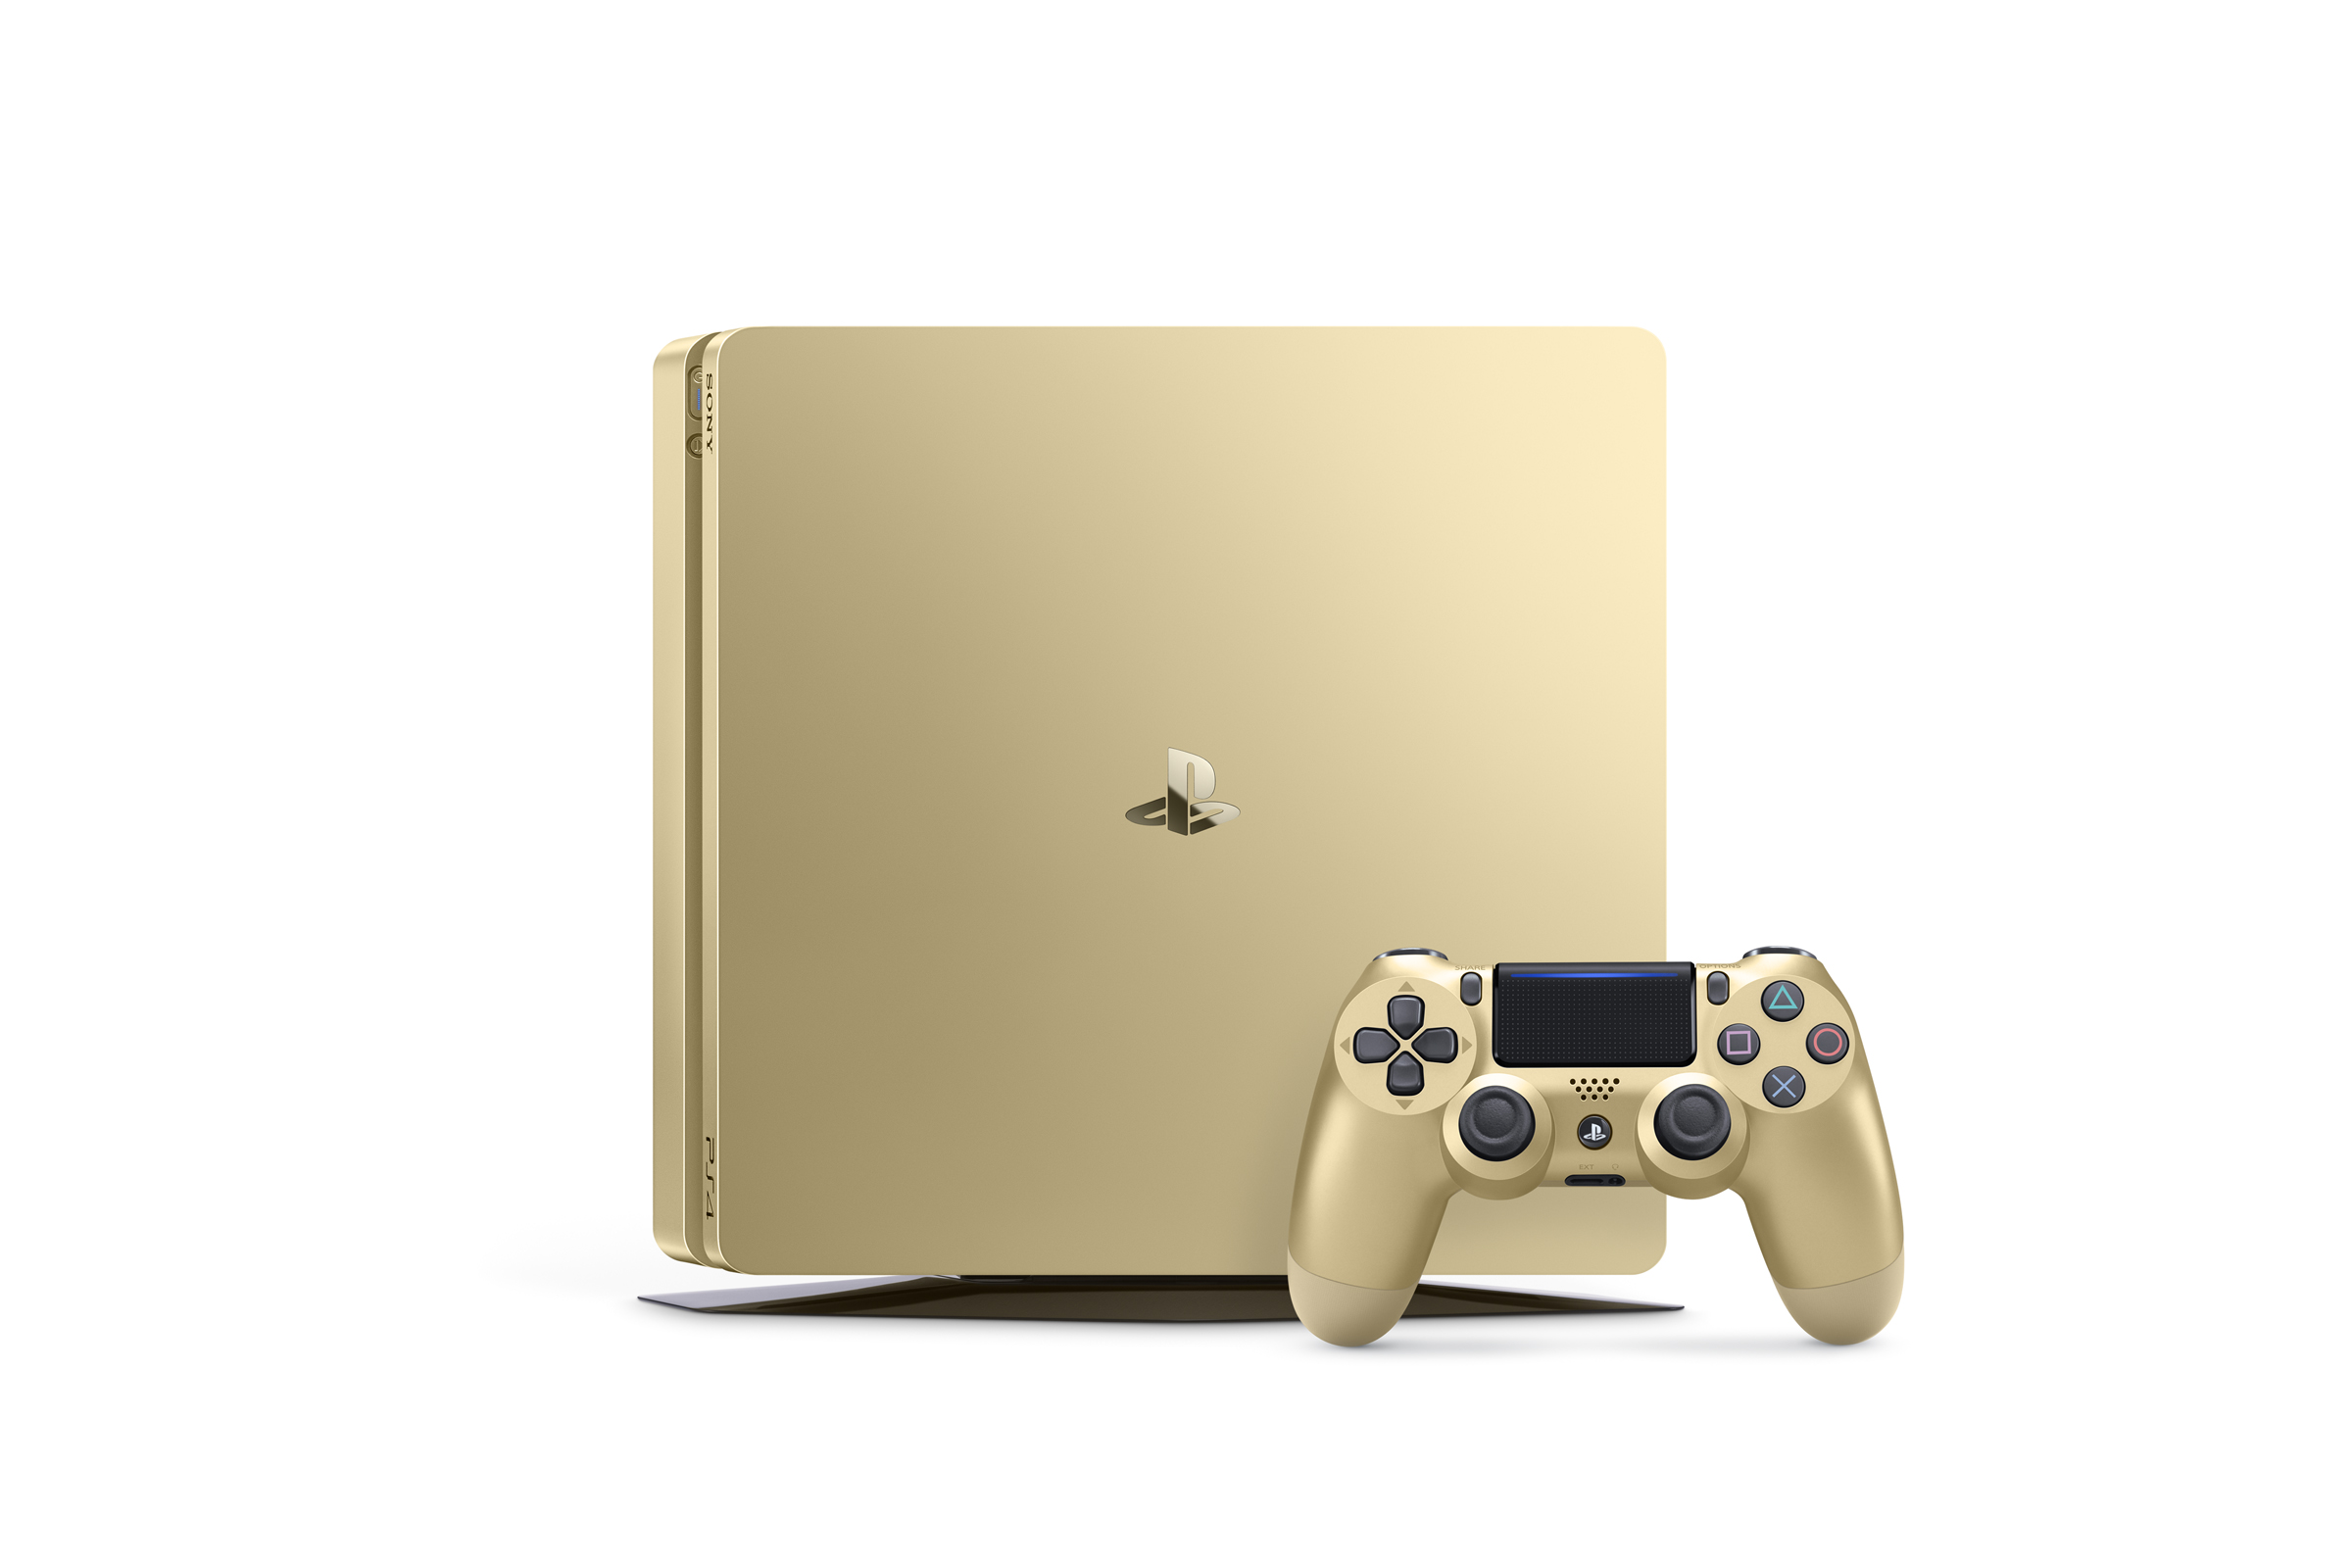 La Playstation 4 Slim Gold et Silver annoncée (3)